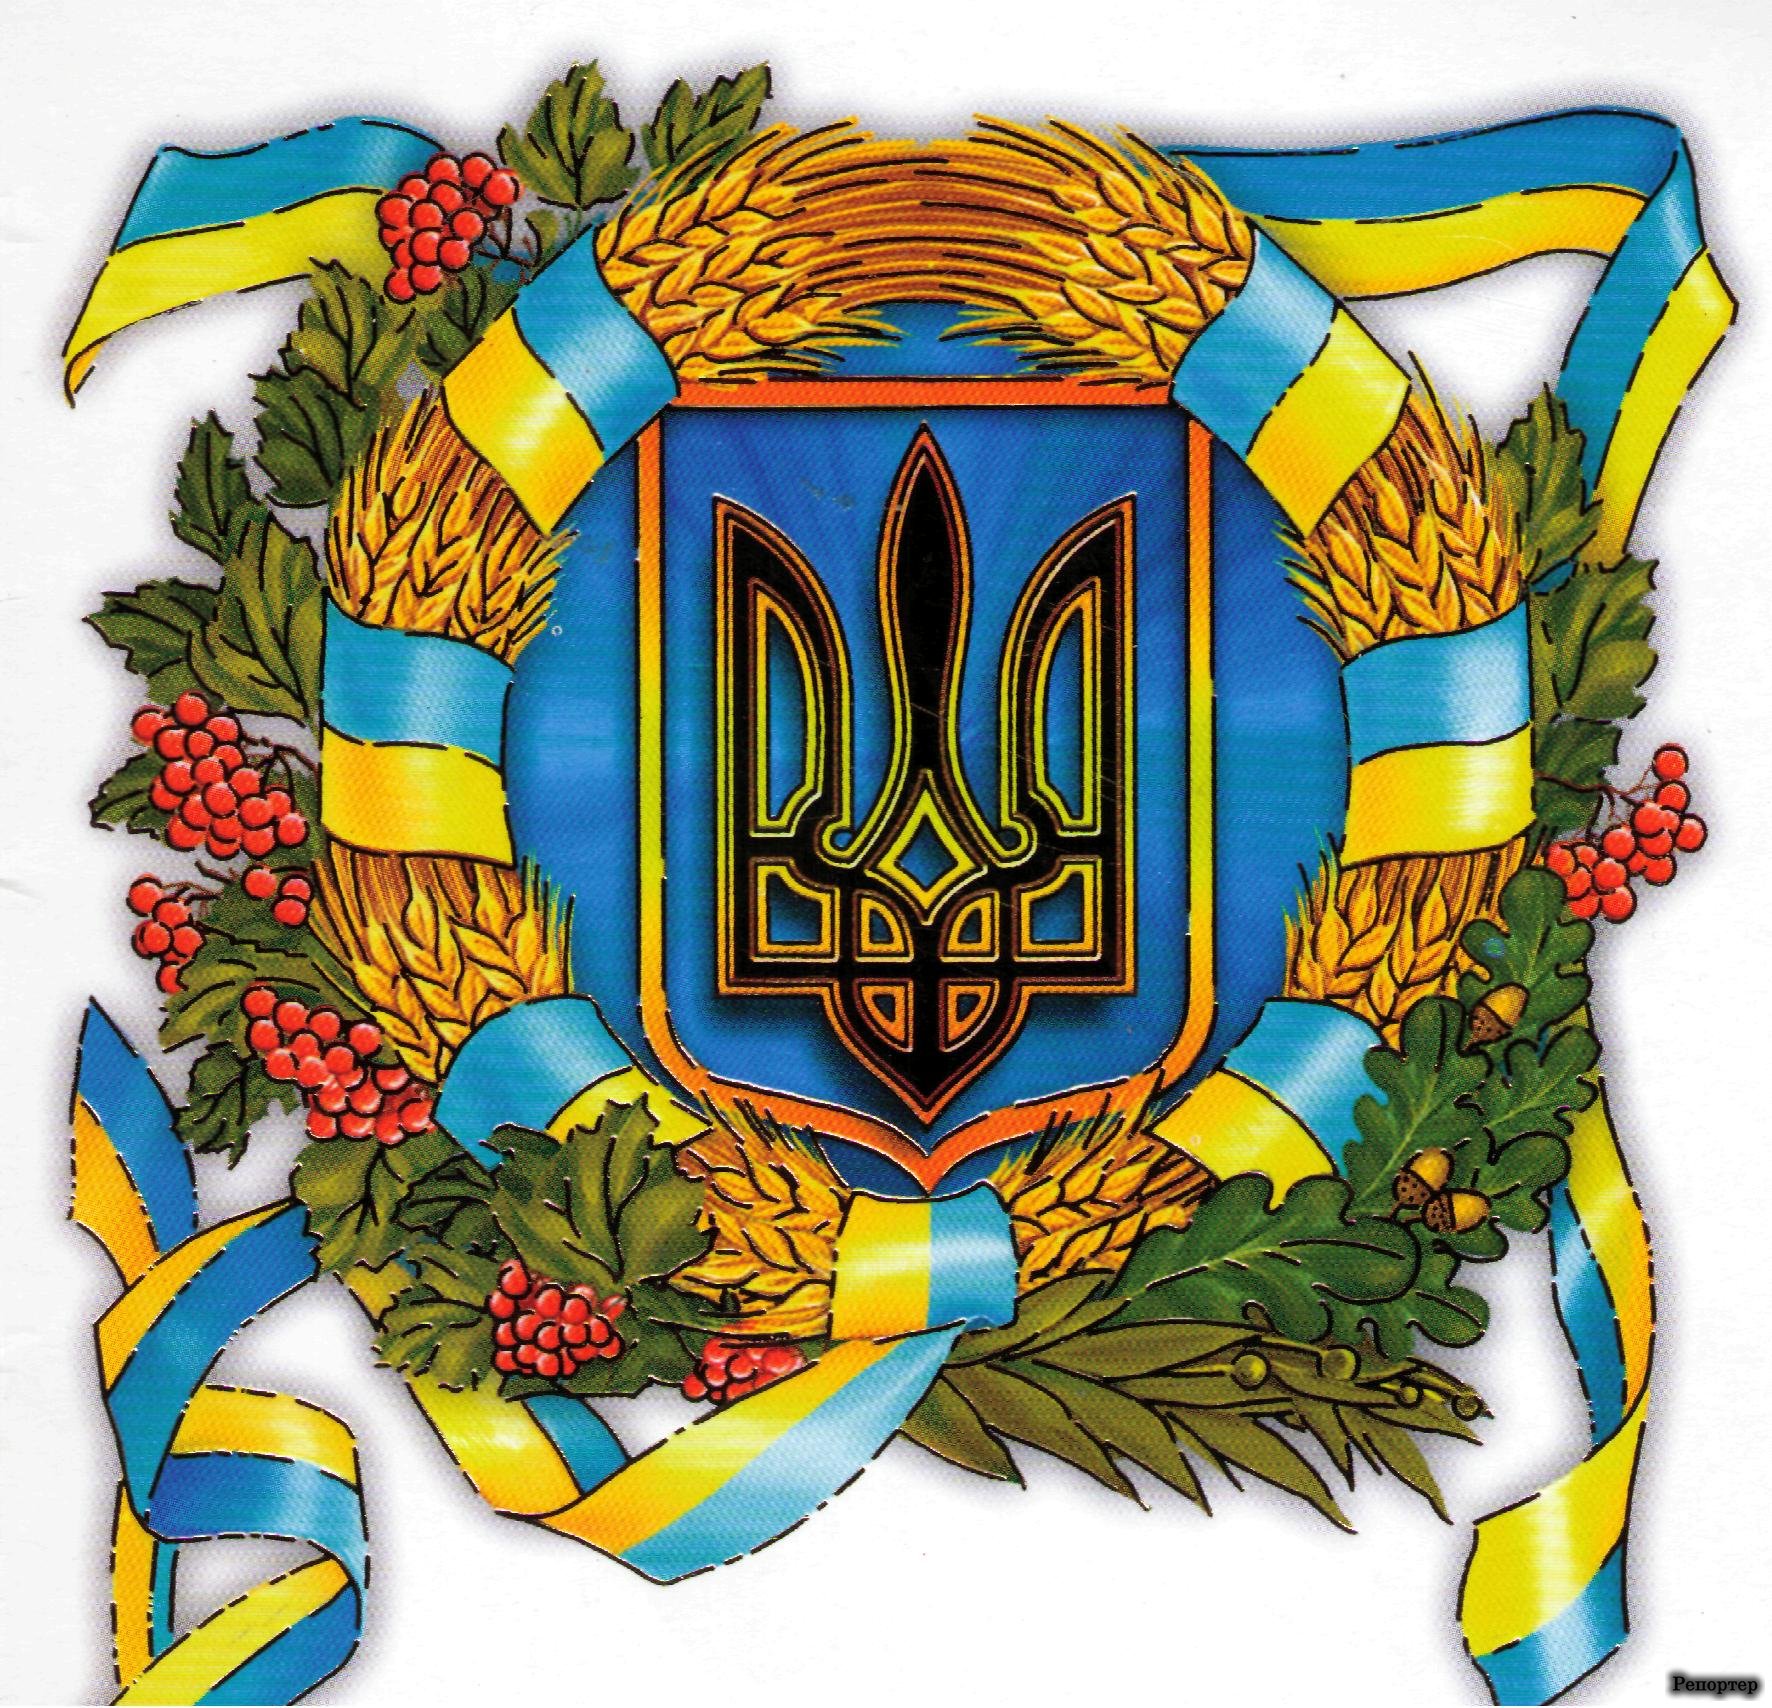 Результат пошуку зображень за запитом "україна велика країна"